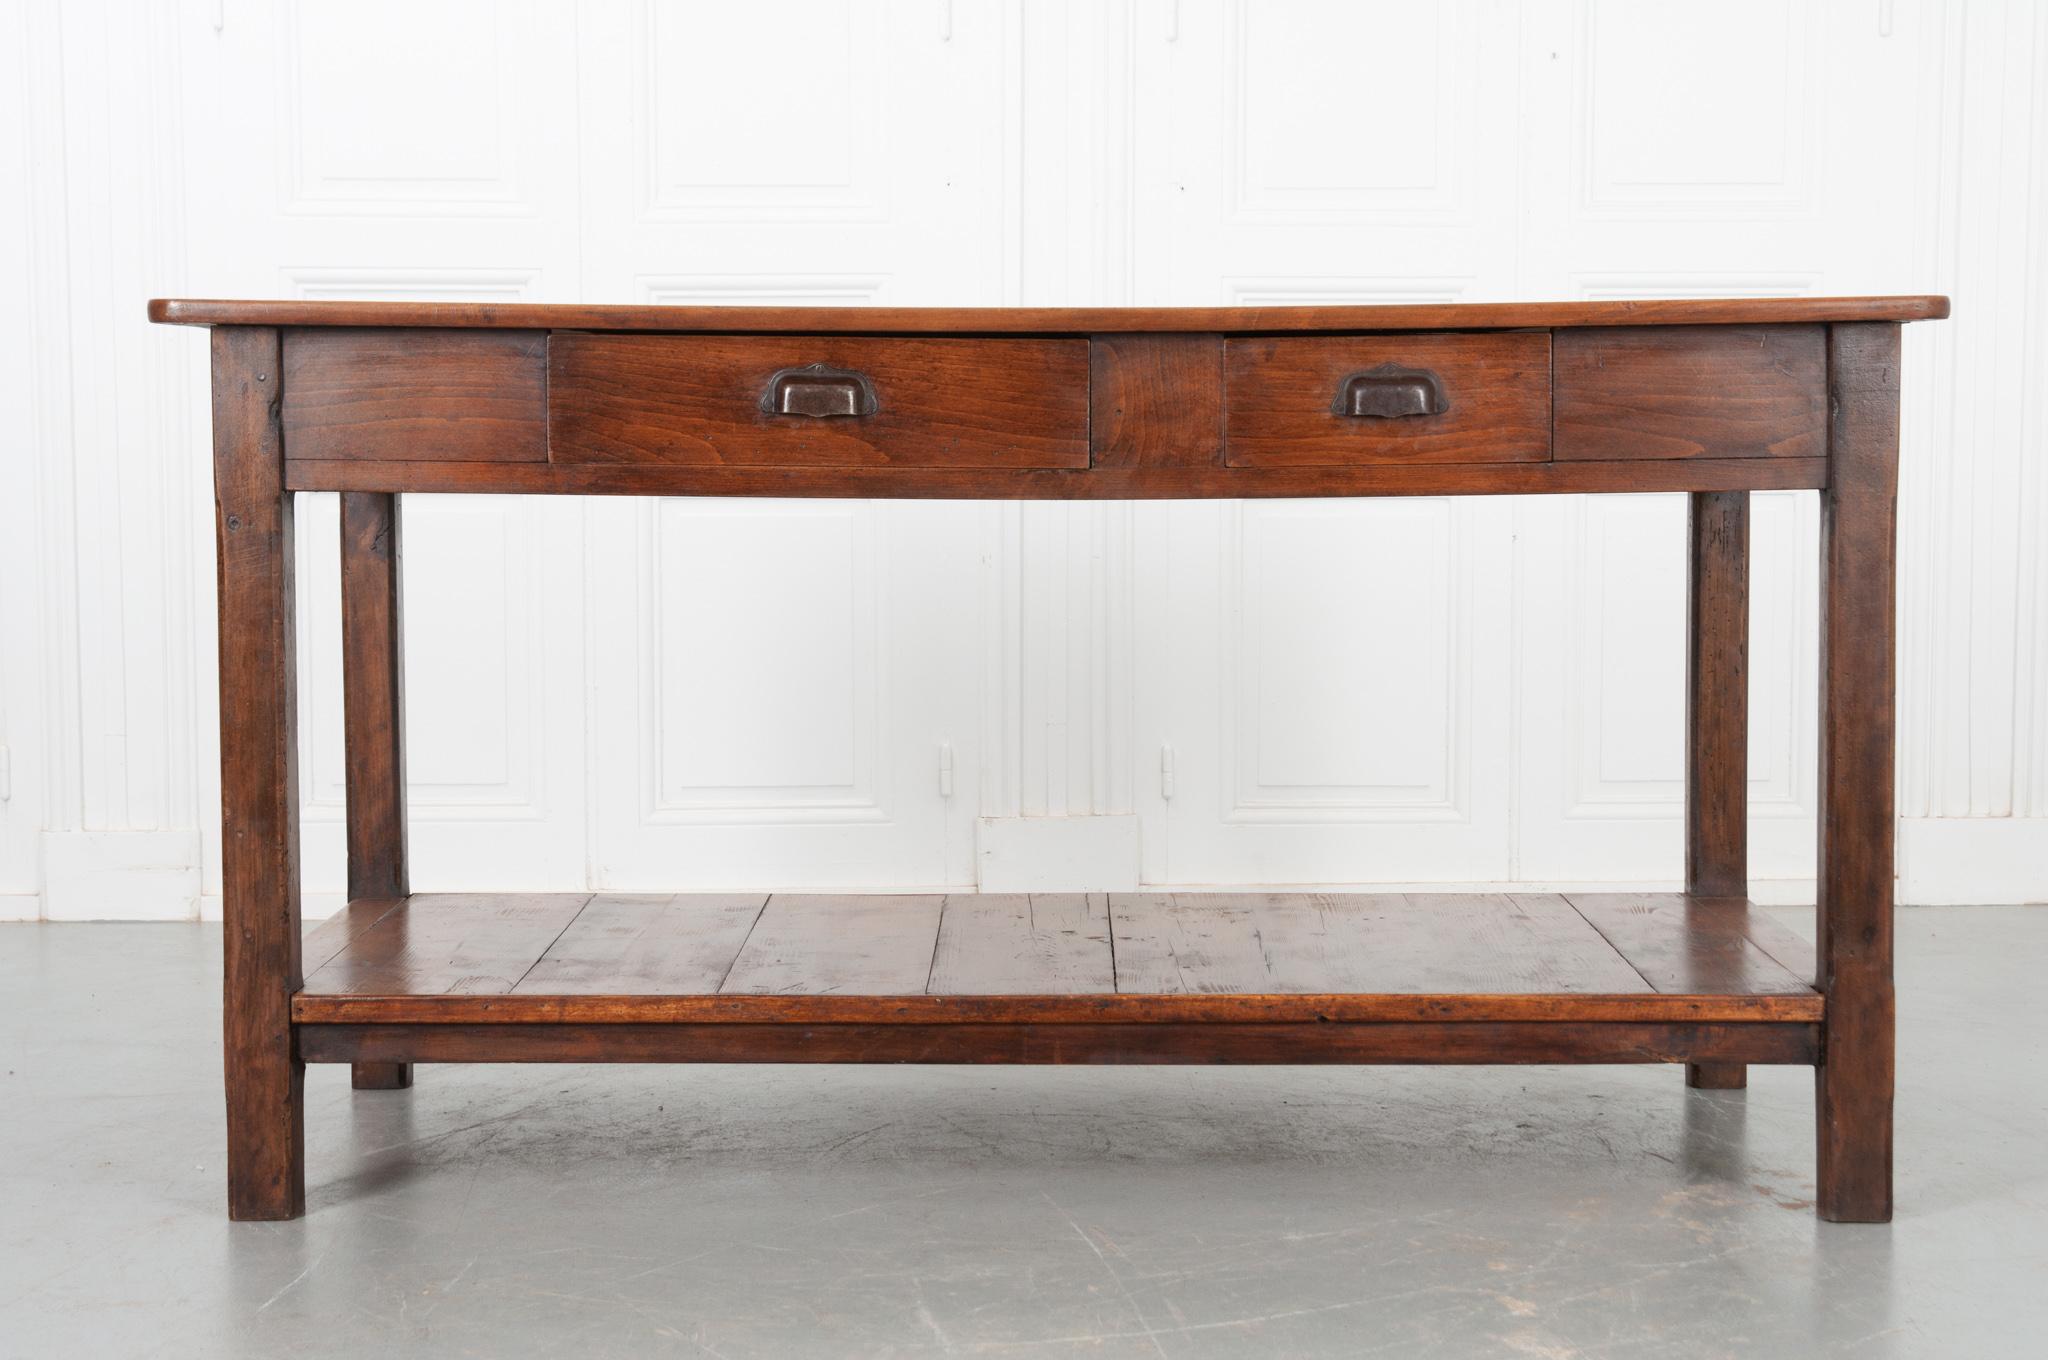 Cette belle table en hêtre est originaire de France, vers 1890, et est en très bon état. Quatre planches de bois constituent la surface supérieure pour vous permettre d'admirer le grain ondulé, lissé avec de la cire en pâte française pour révéler la